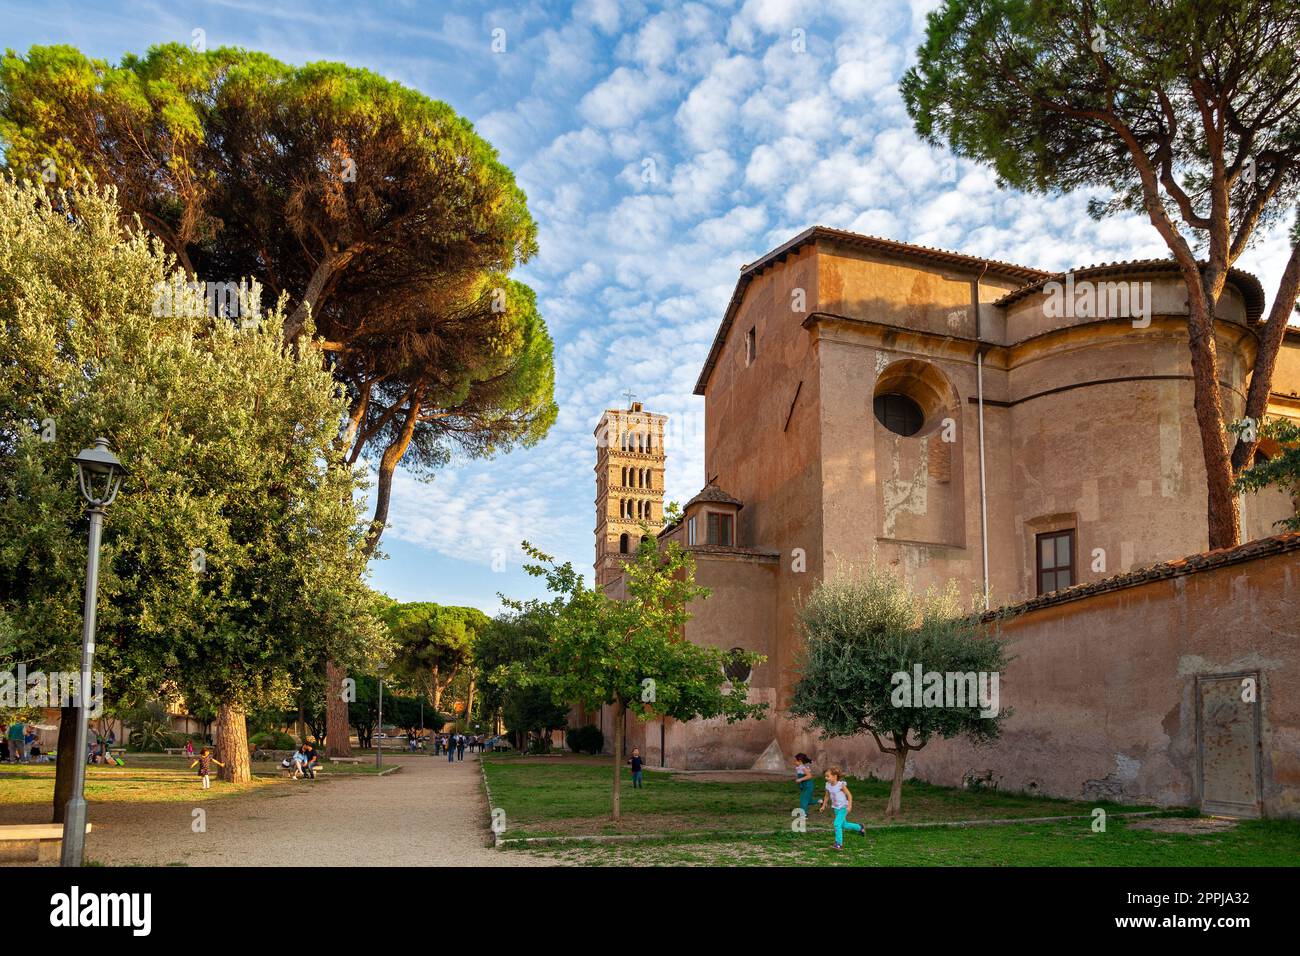 Giardino Storico di Sant'Alessio garden on the Aventine Hill in Rome. Stock Photo